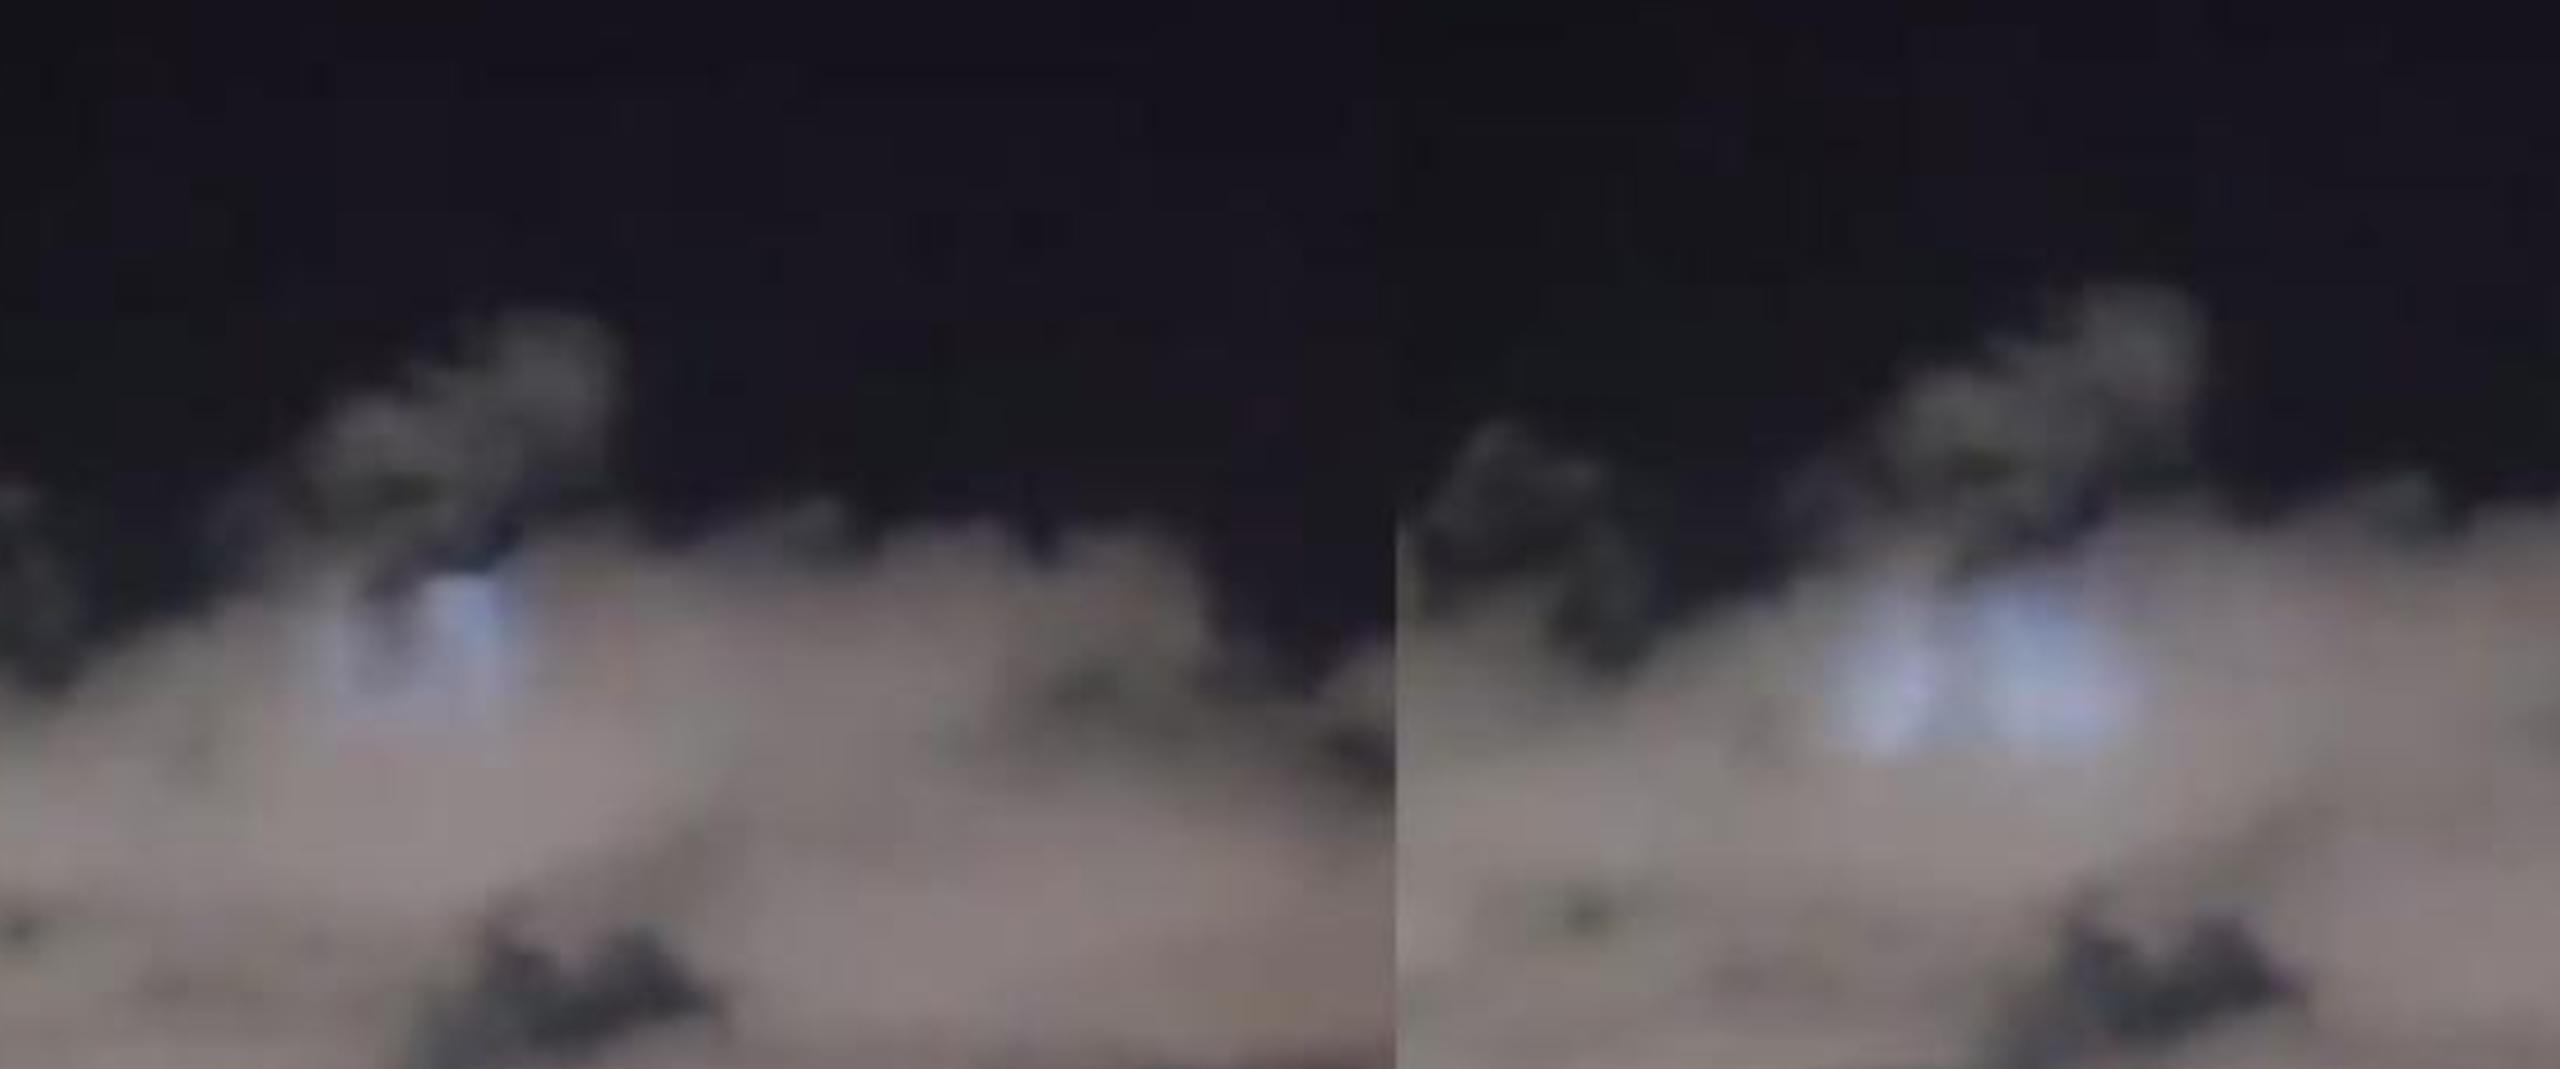 Usuarios de la redes sociales compartieron las luces azules que se registraron en el cielo de Marruecos tras el terremoto